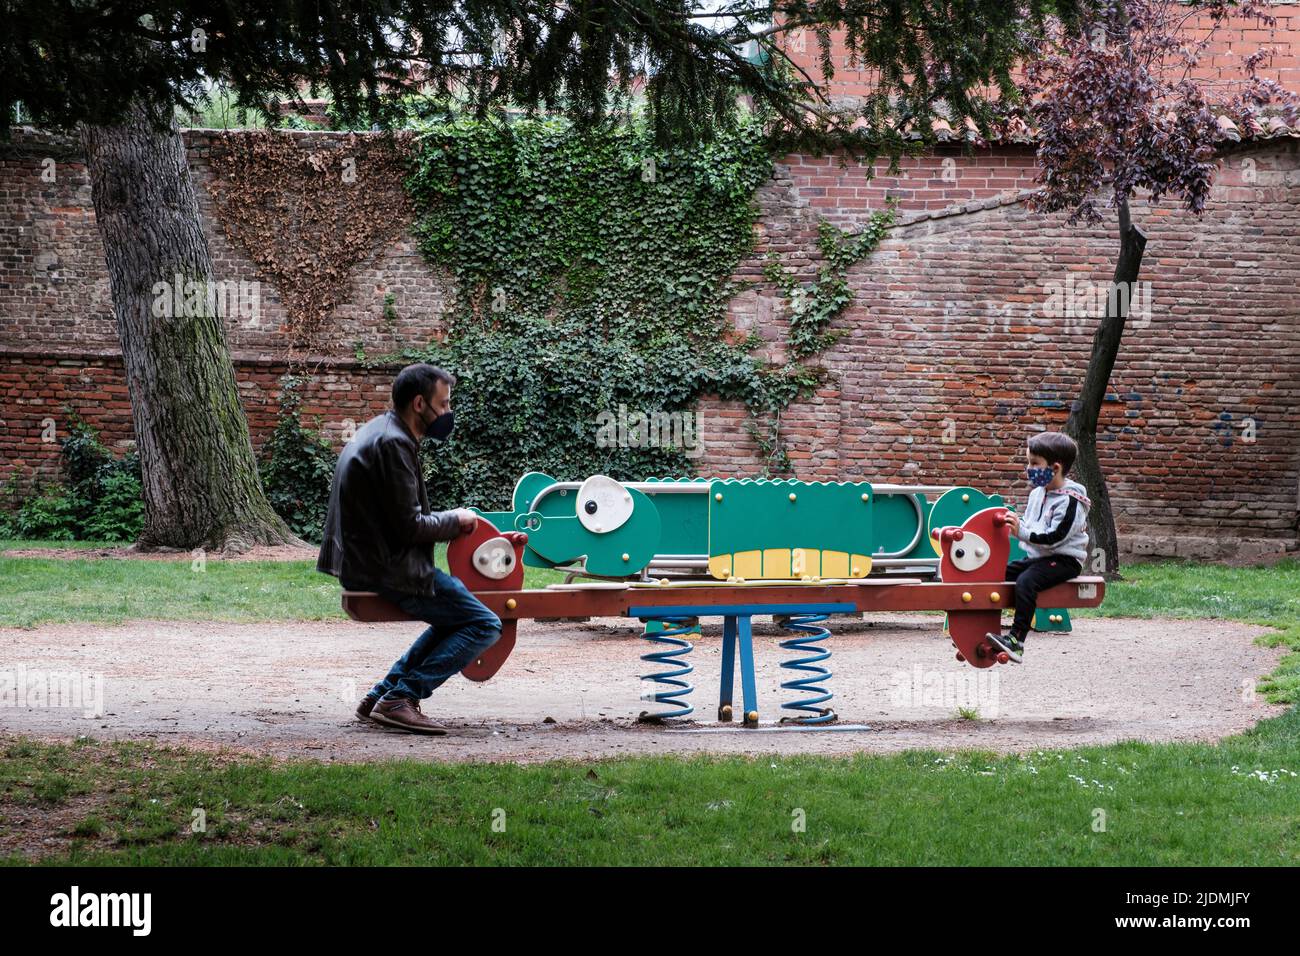 Spanien, Leon. Vater und Sohn spielen im Parque del Cid. Stockfoto